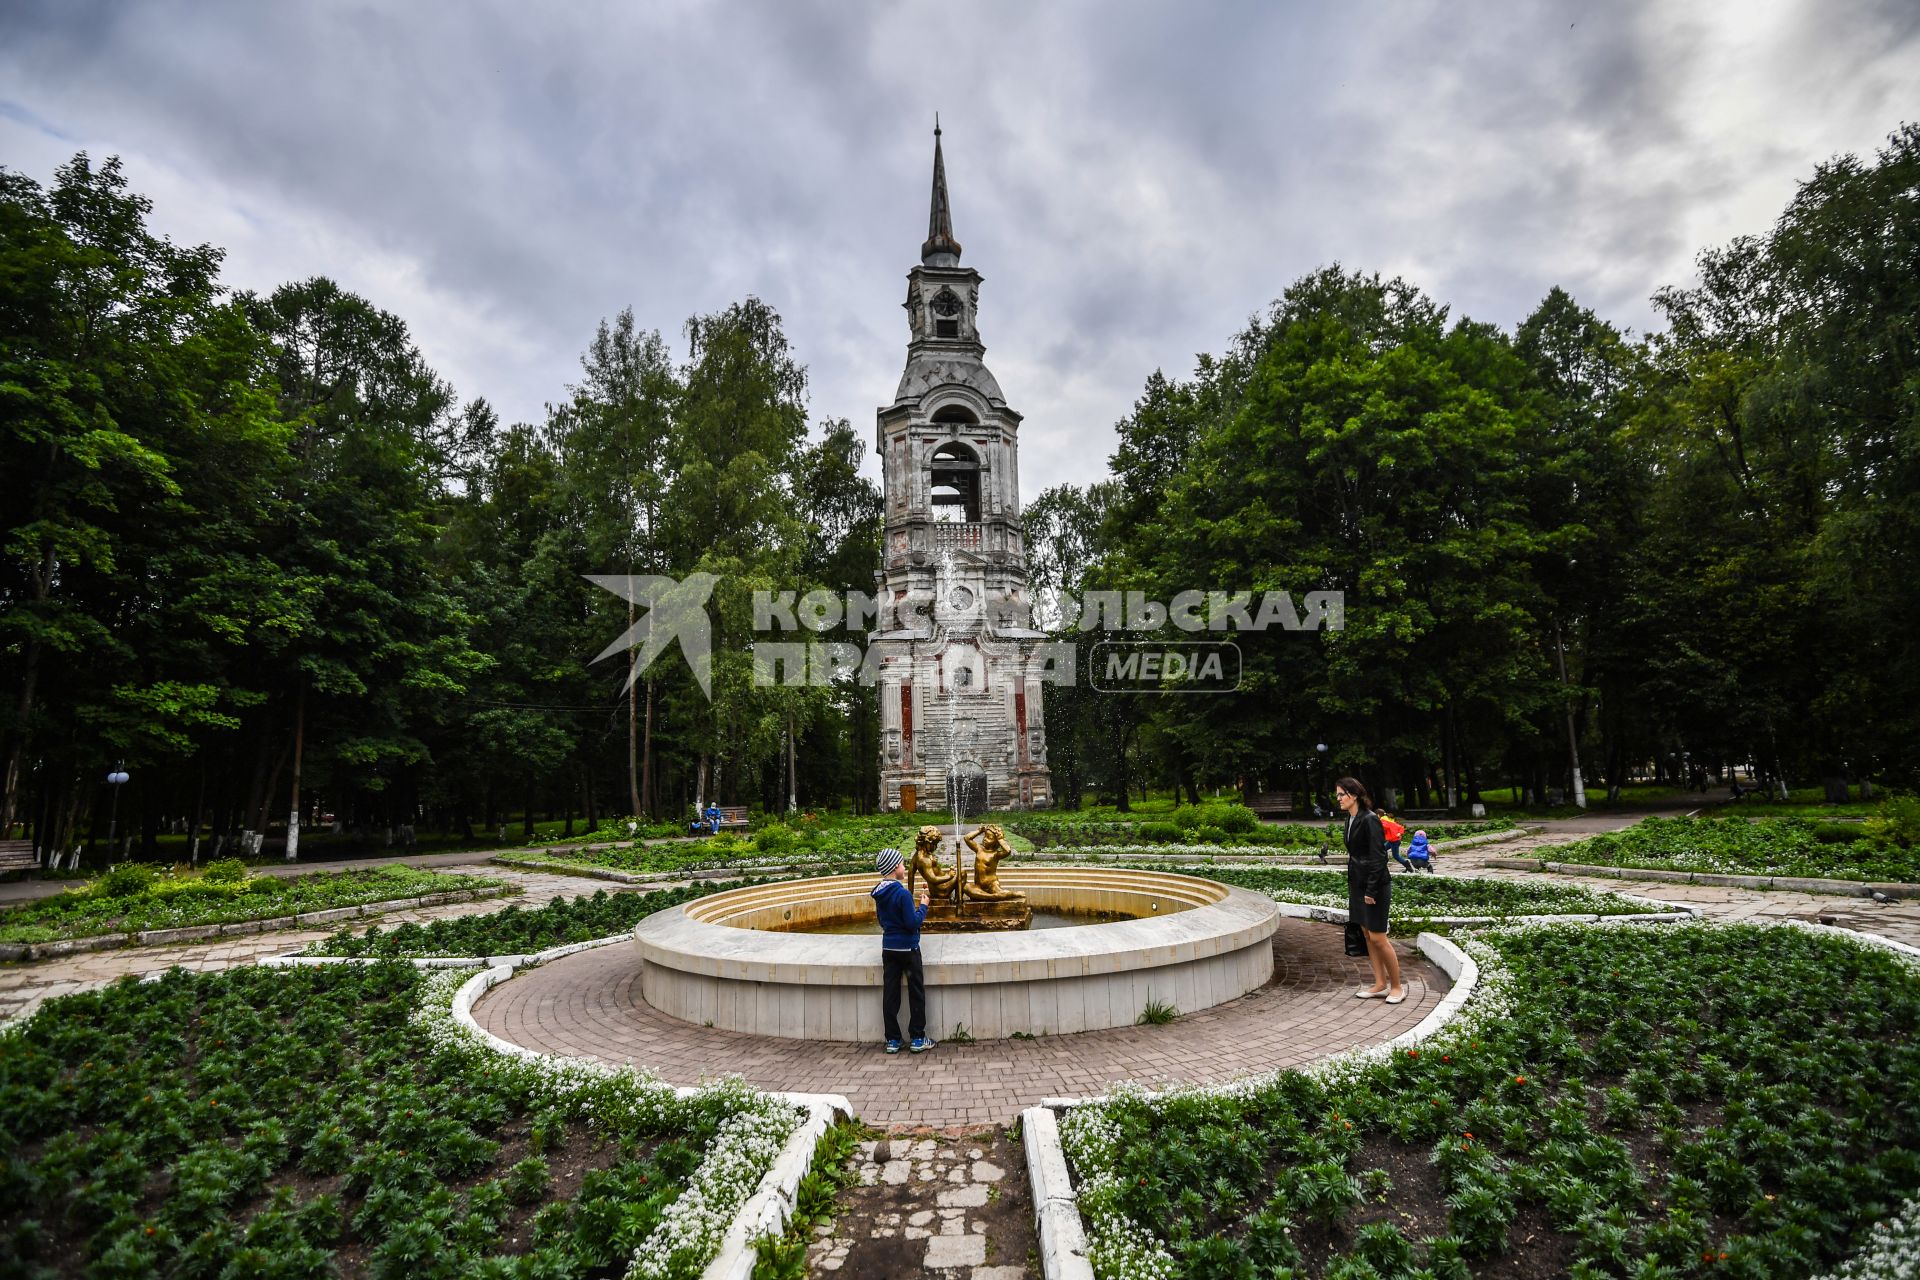 Селигер, Осташков. Вид на фонтан и старинную колокольню в парке `Свобода`.